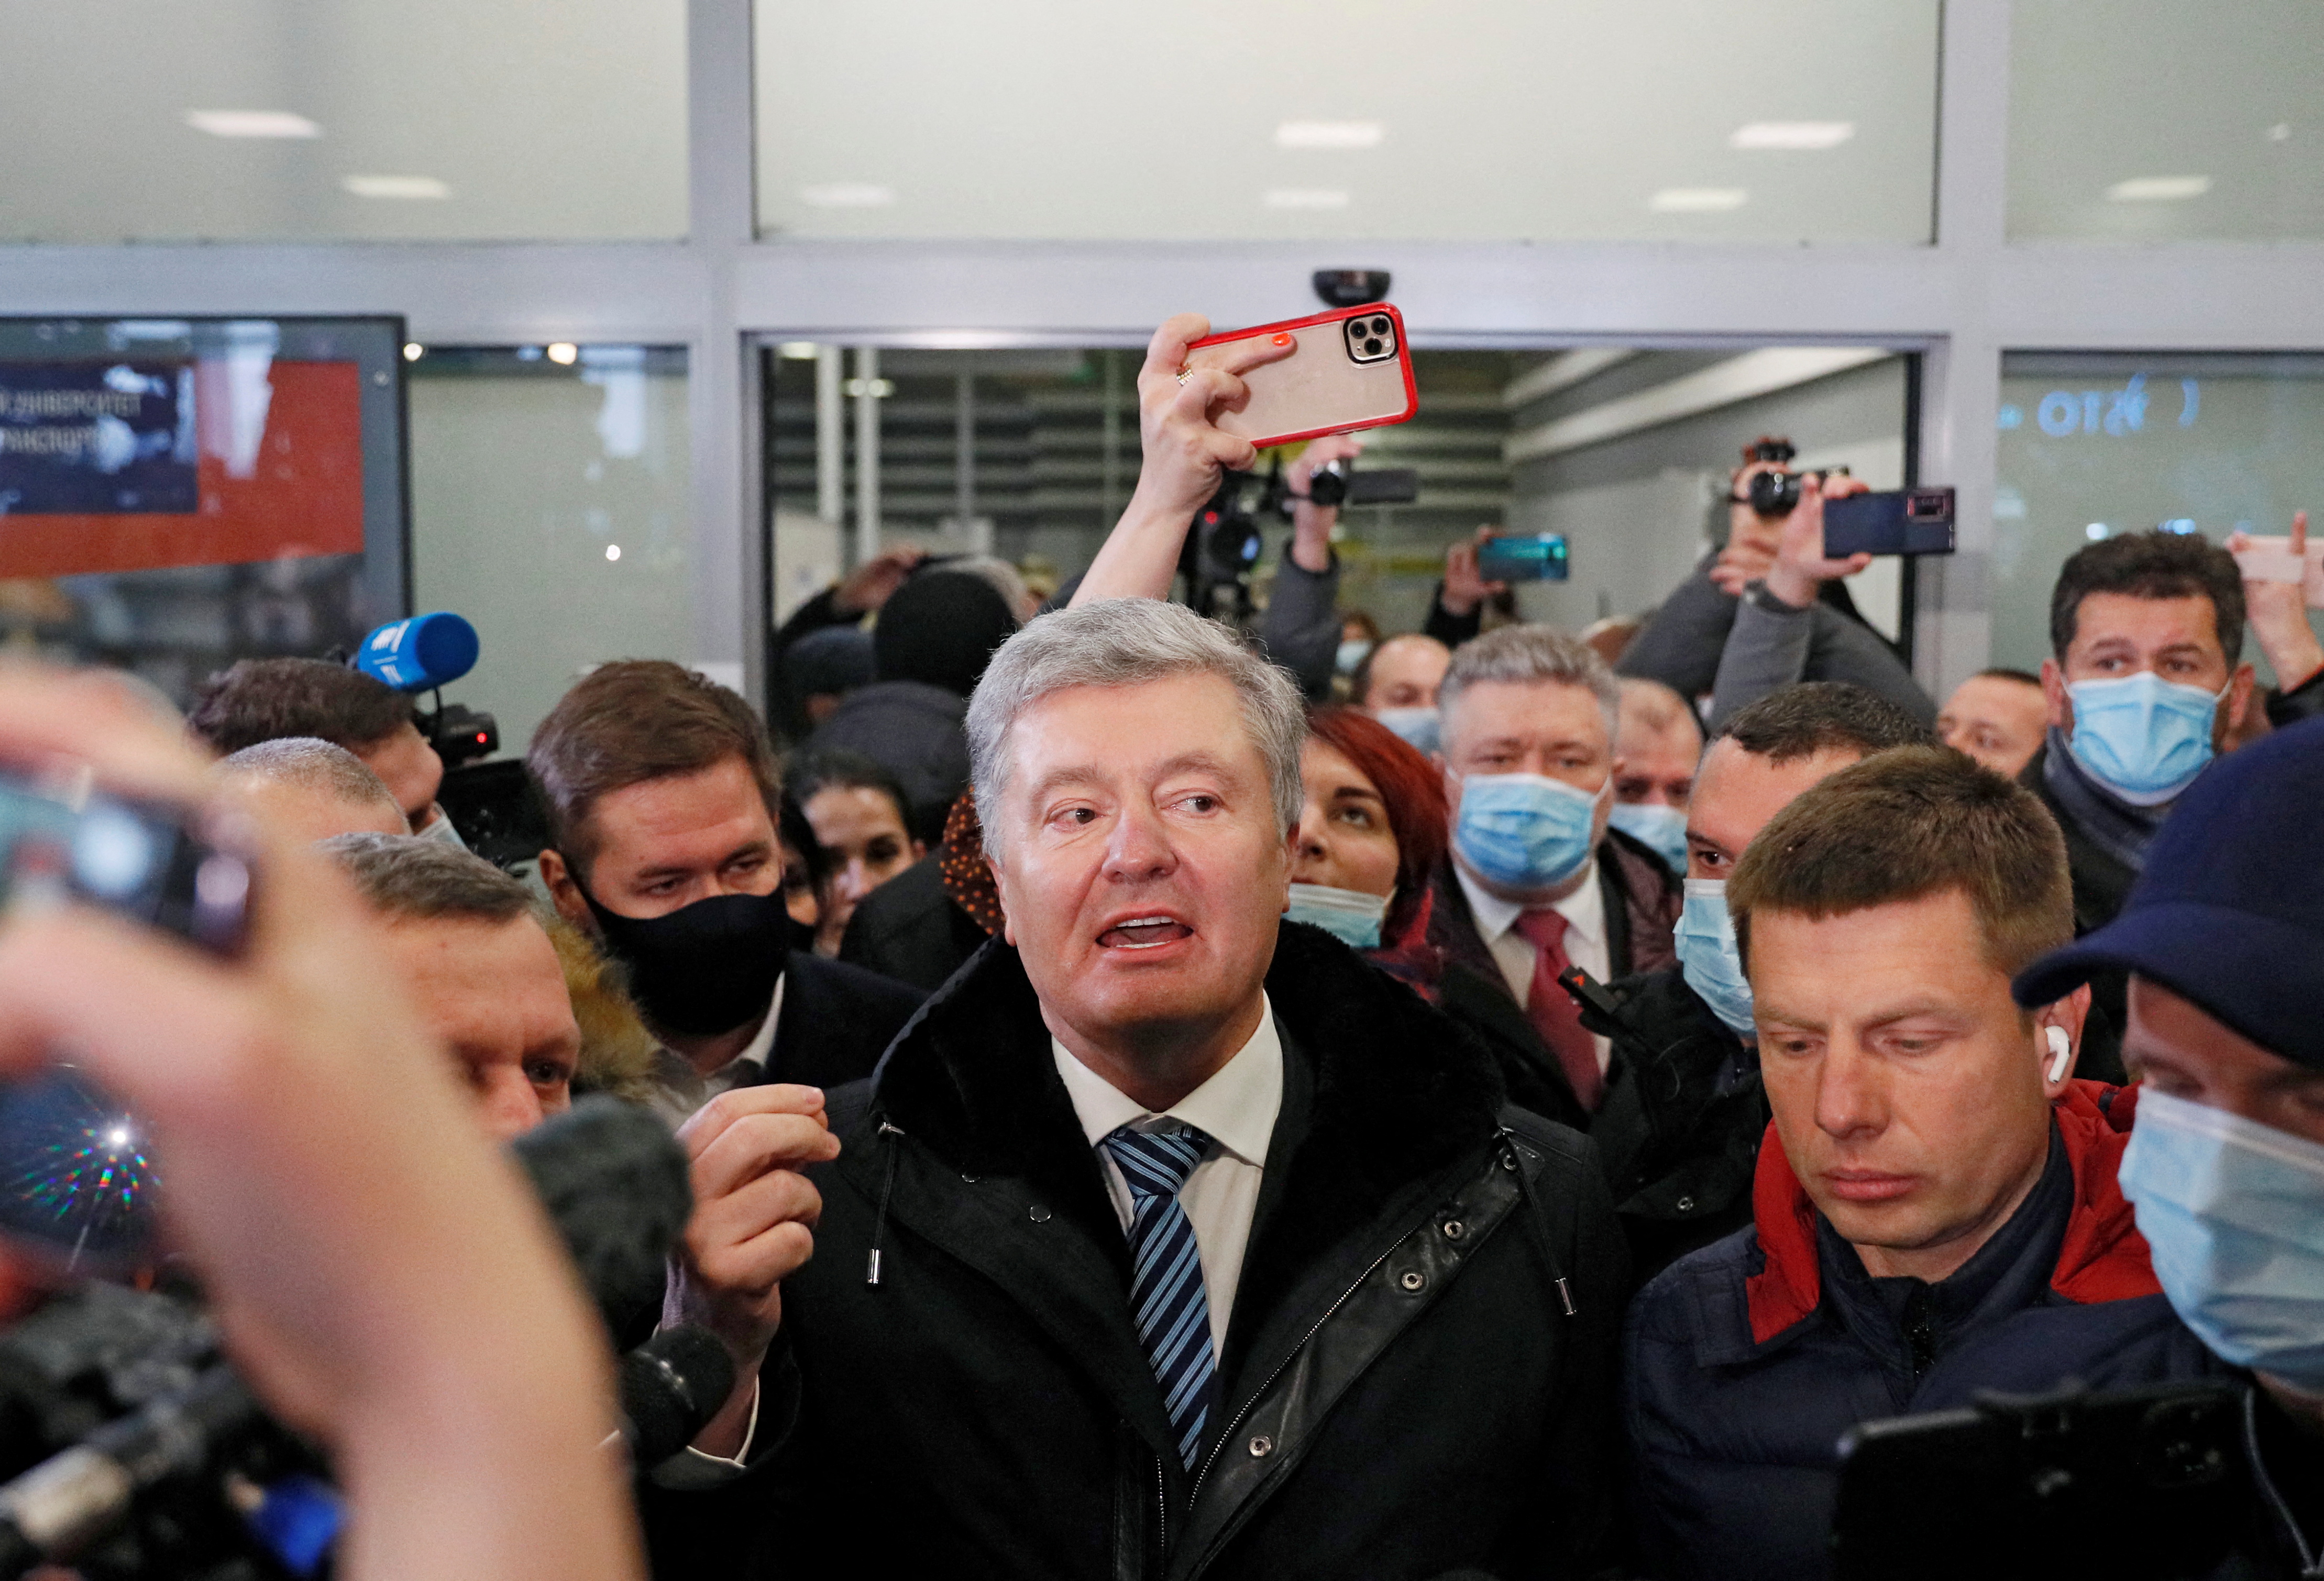 L'ancien président ukrainien Petro Porochenko s'adresse aux journalistes à son arrivée à l'aéroport de Zhulyany à Kiev, en Ukraine, le 17 janvier 2022. REUTERS/Gleb Garanich